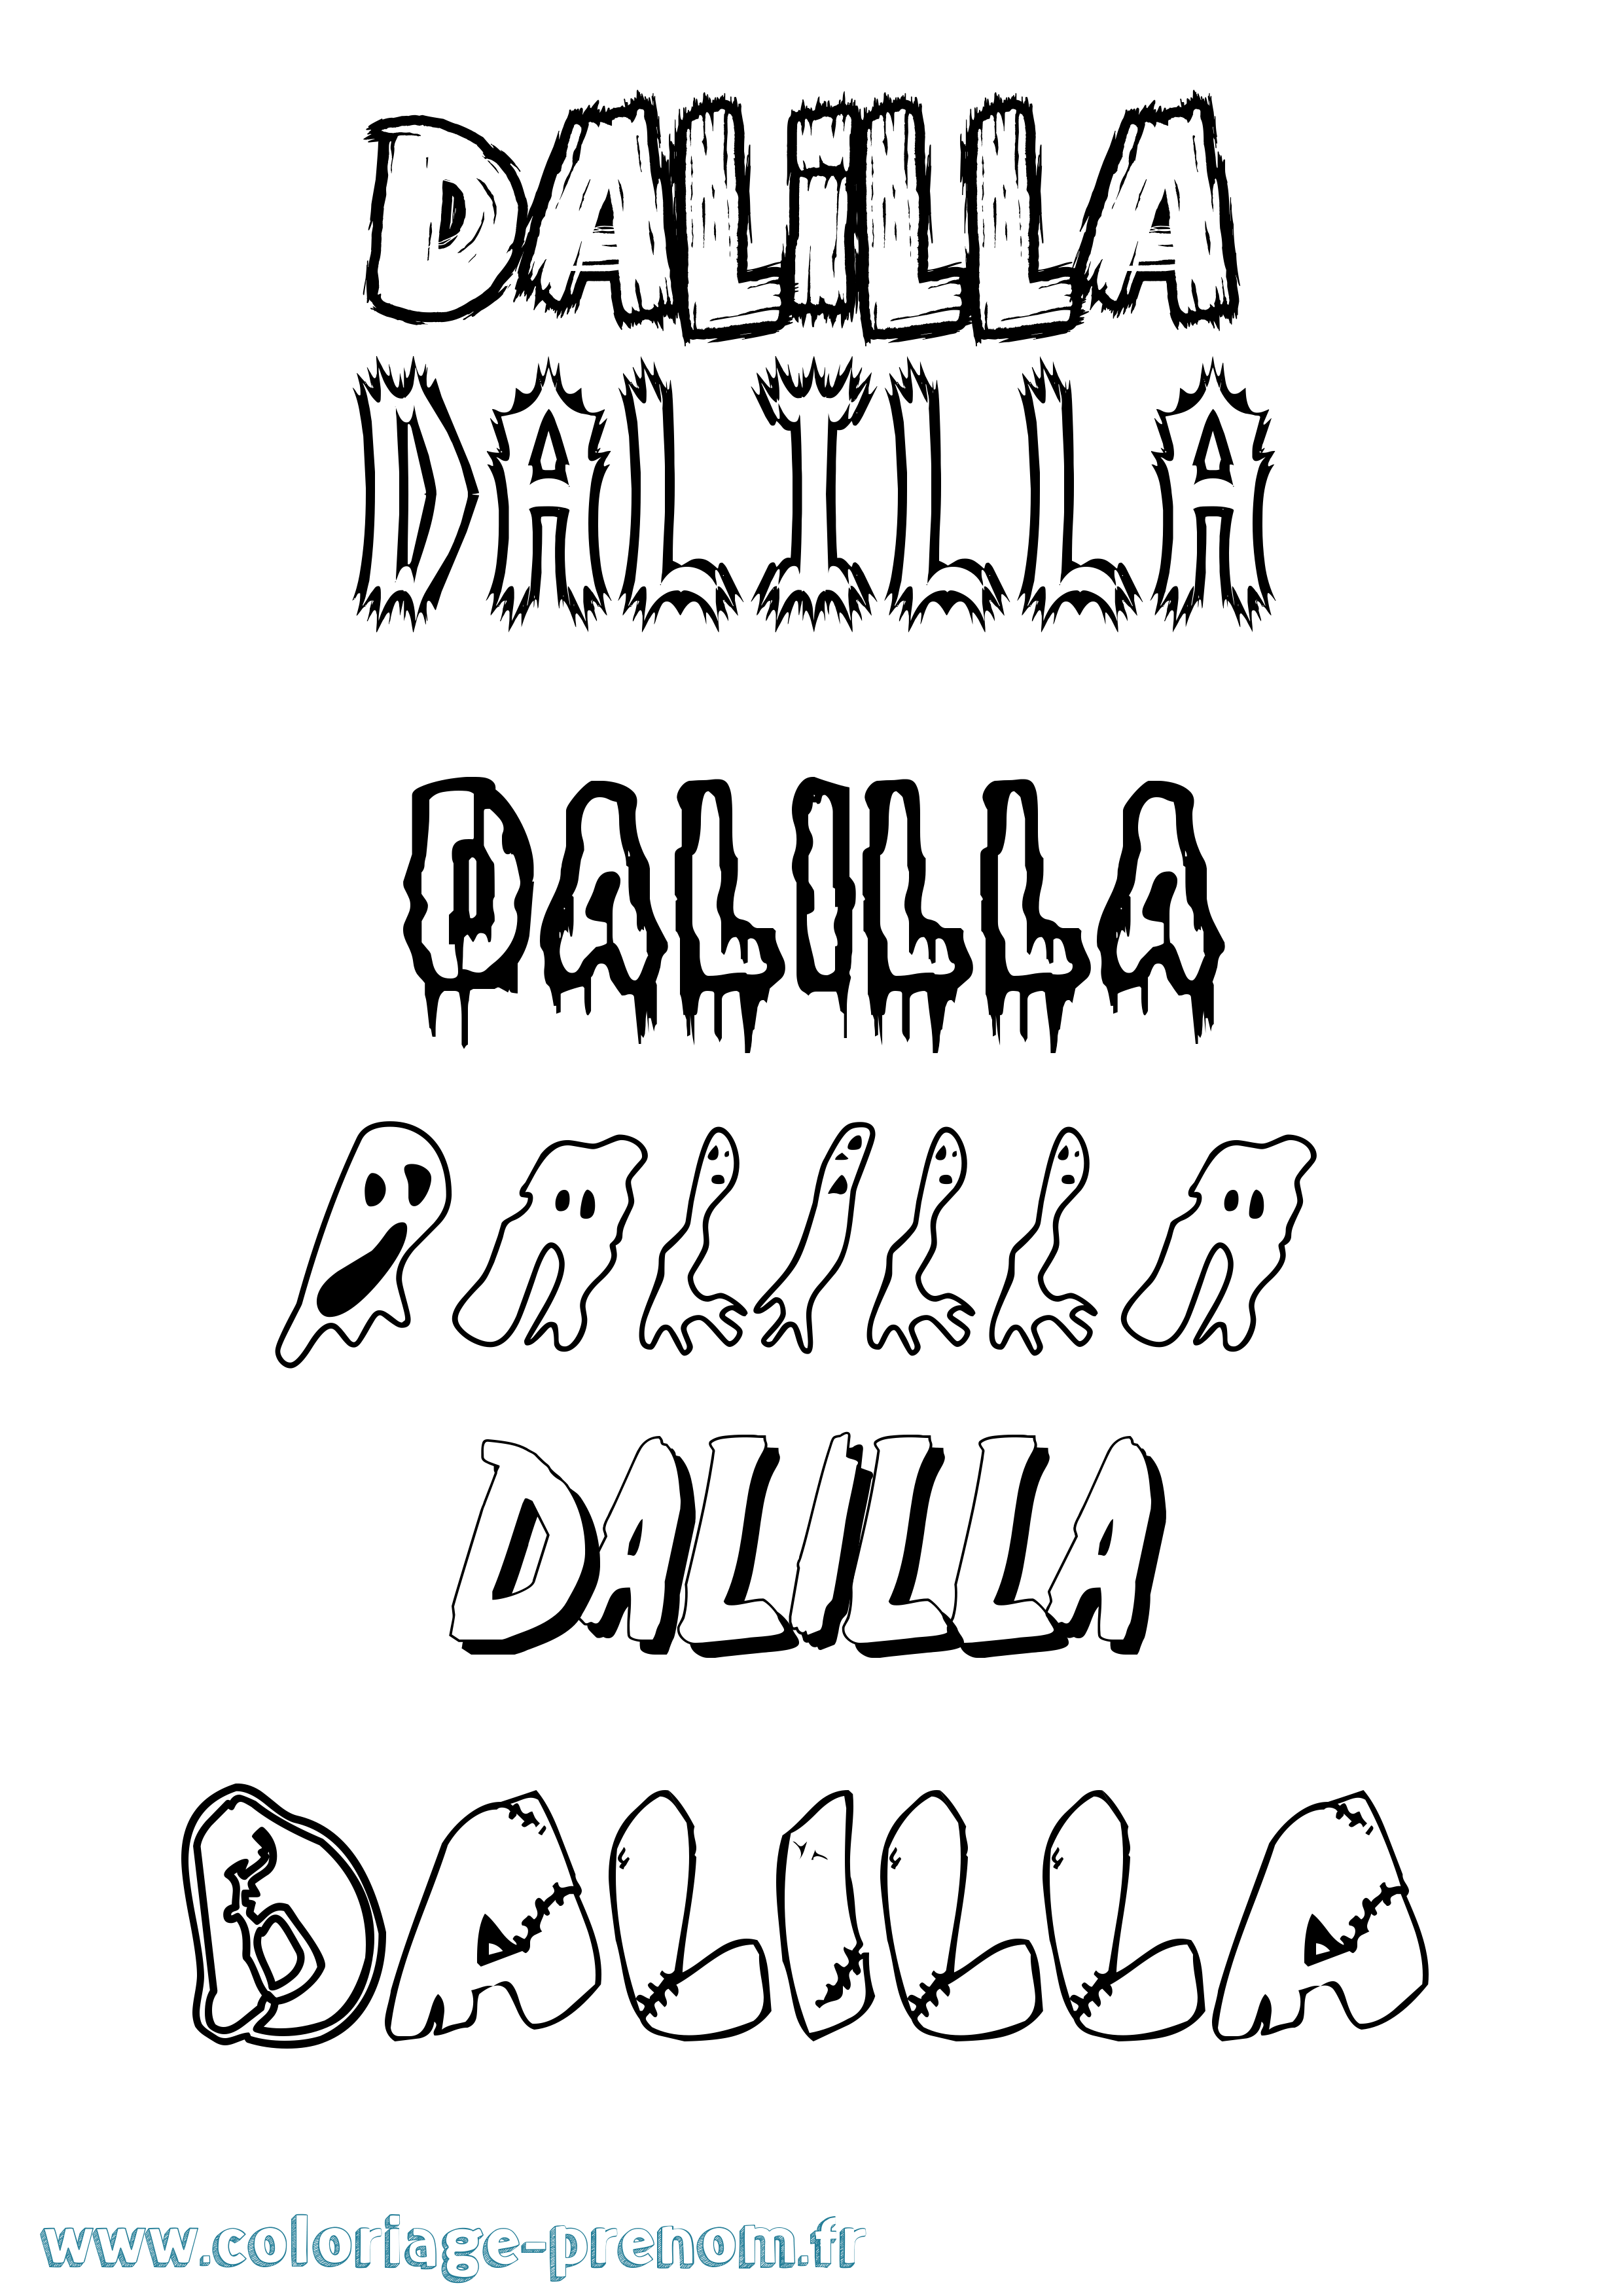 Coloriage prénom Dalilla Frisson